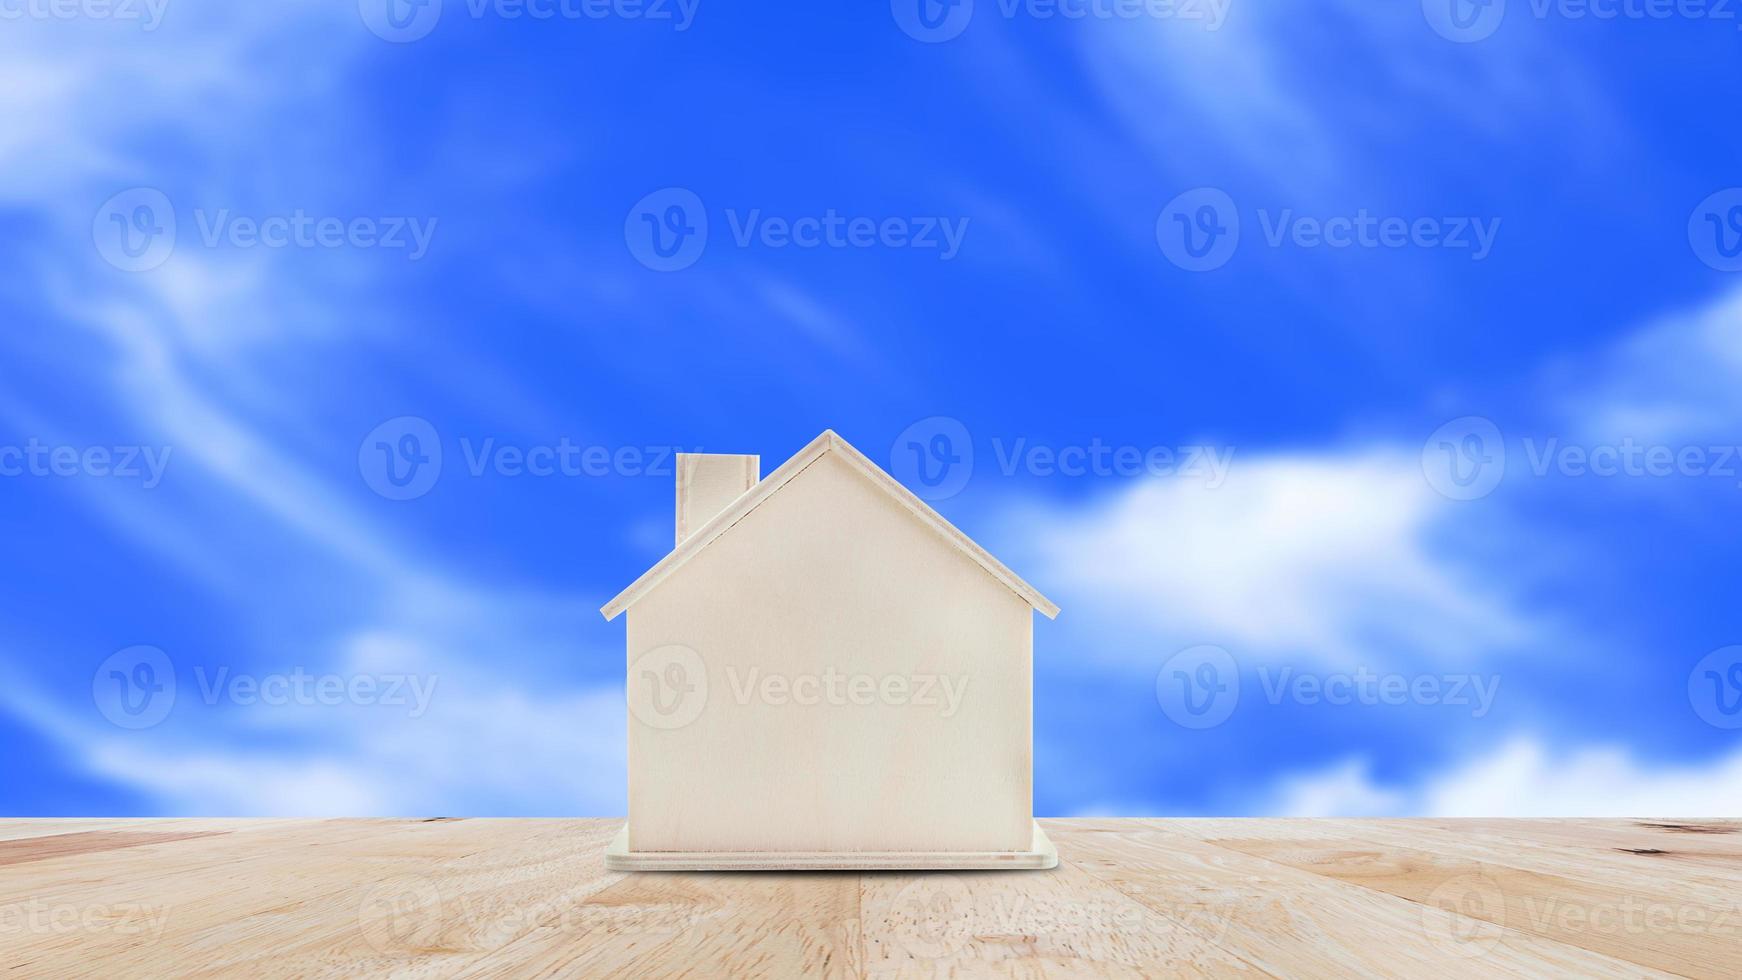 små Hem modell på trä- tabell med blå himmel bakgrund.familj liv och företag verklig egendom begrepp. foto